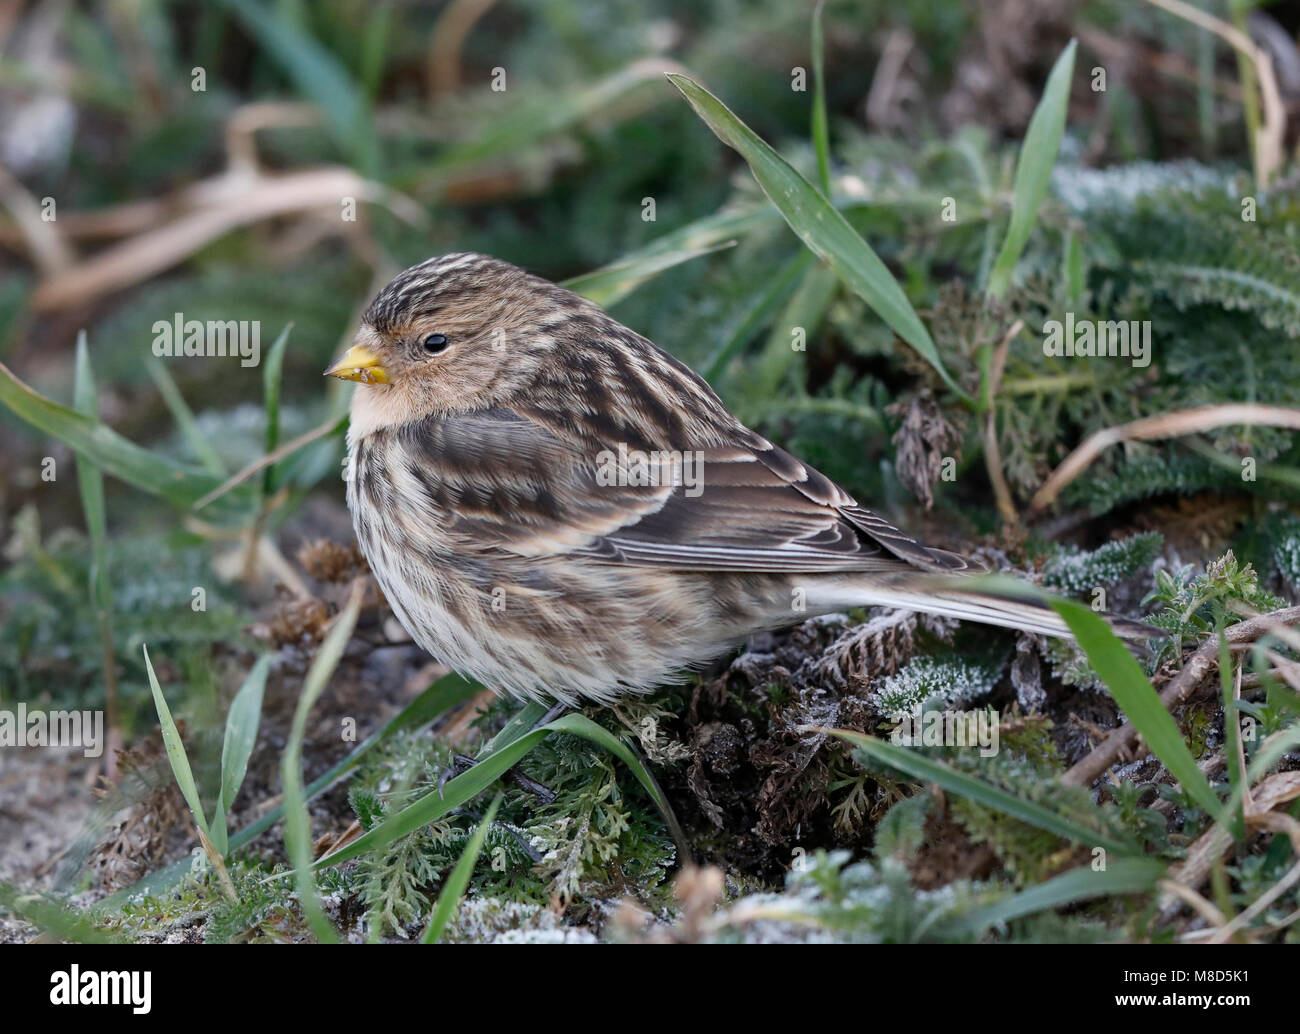 bird image by Chris van Rijswijk Stock Photo